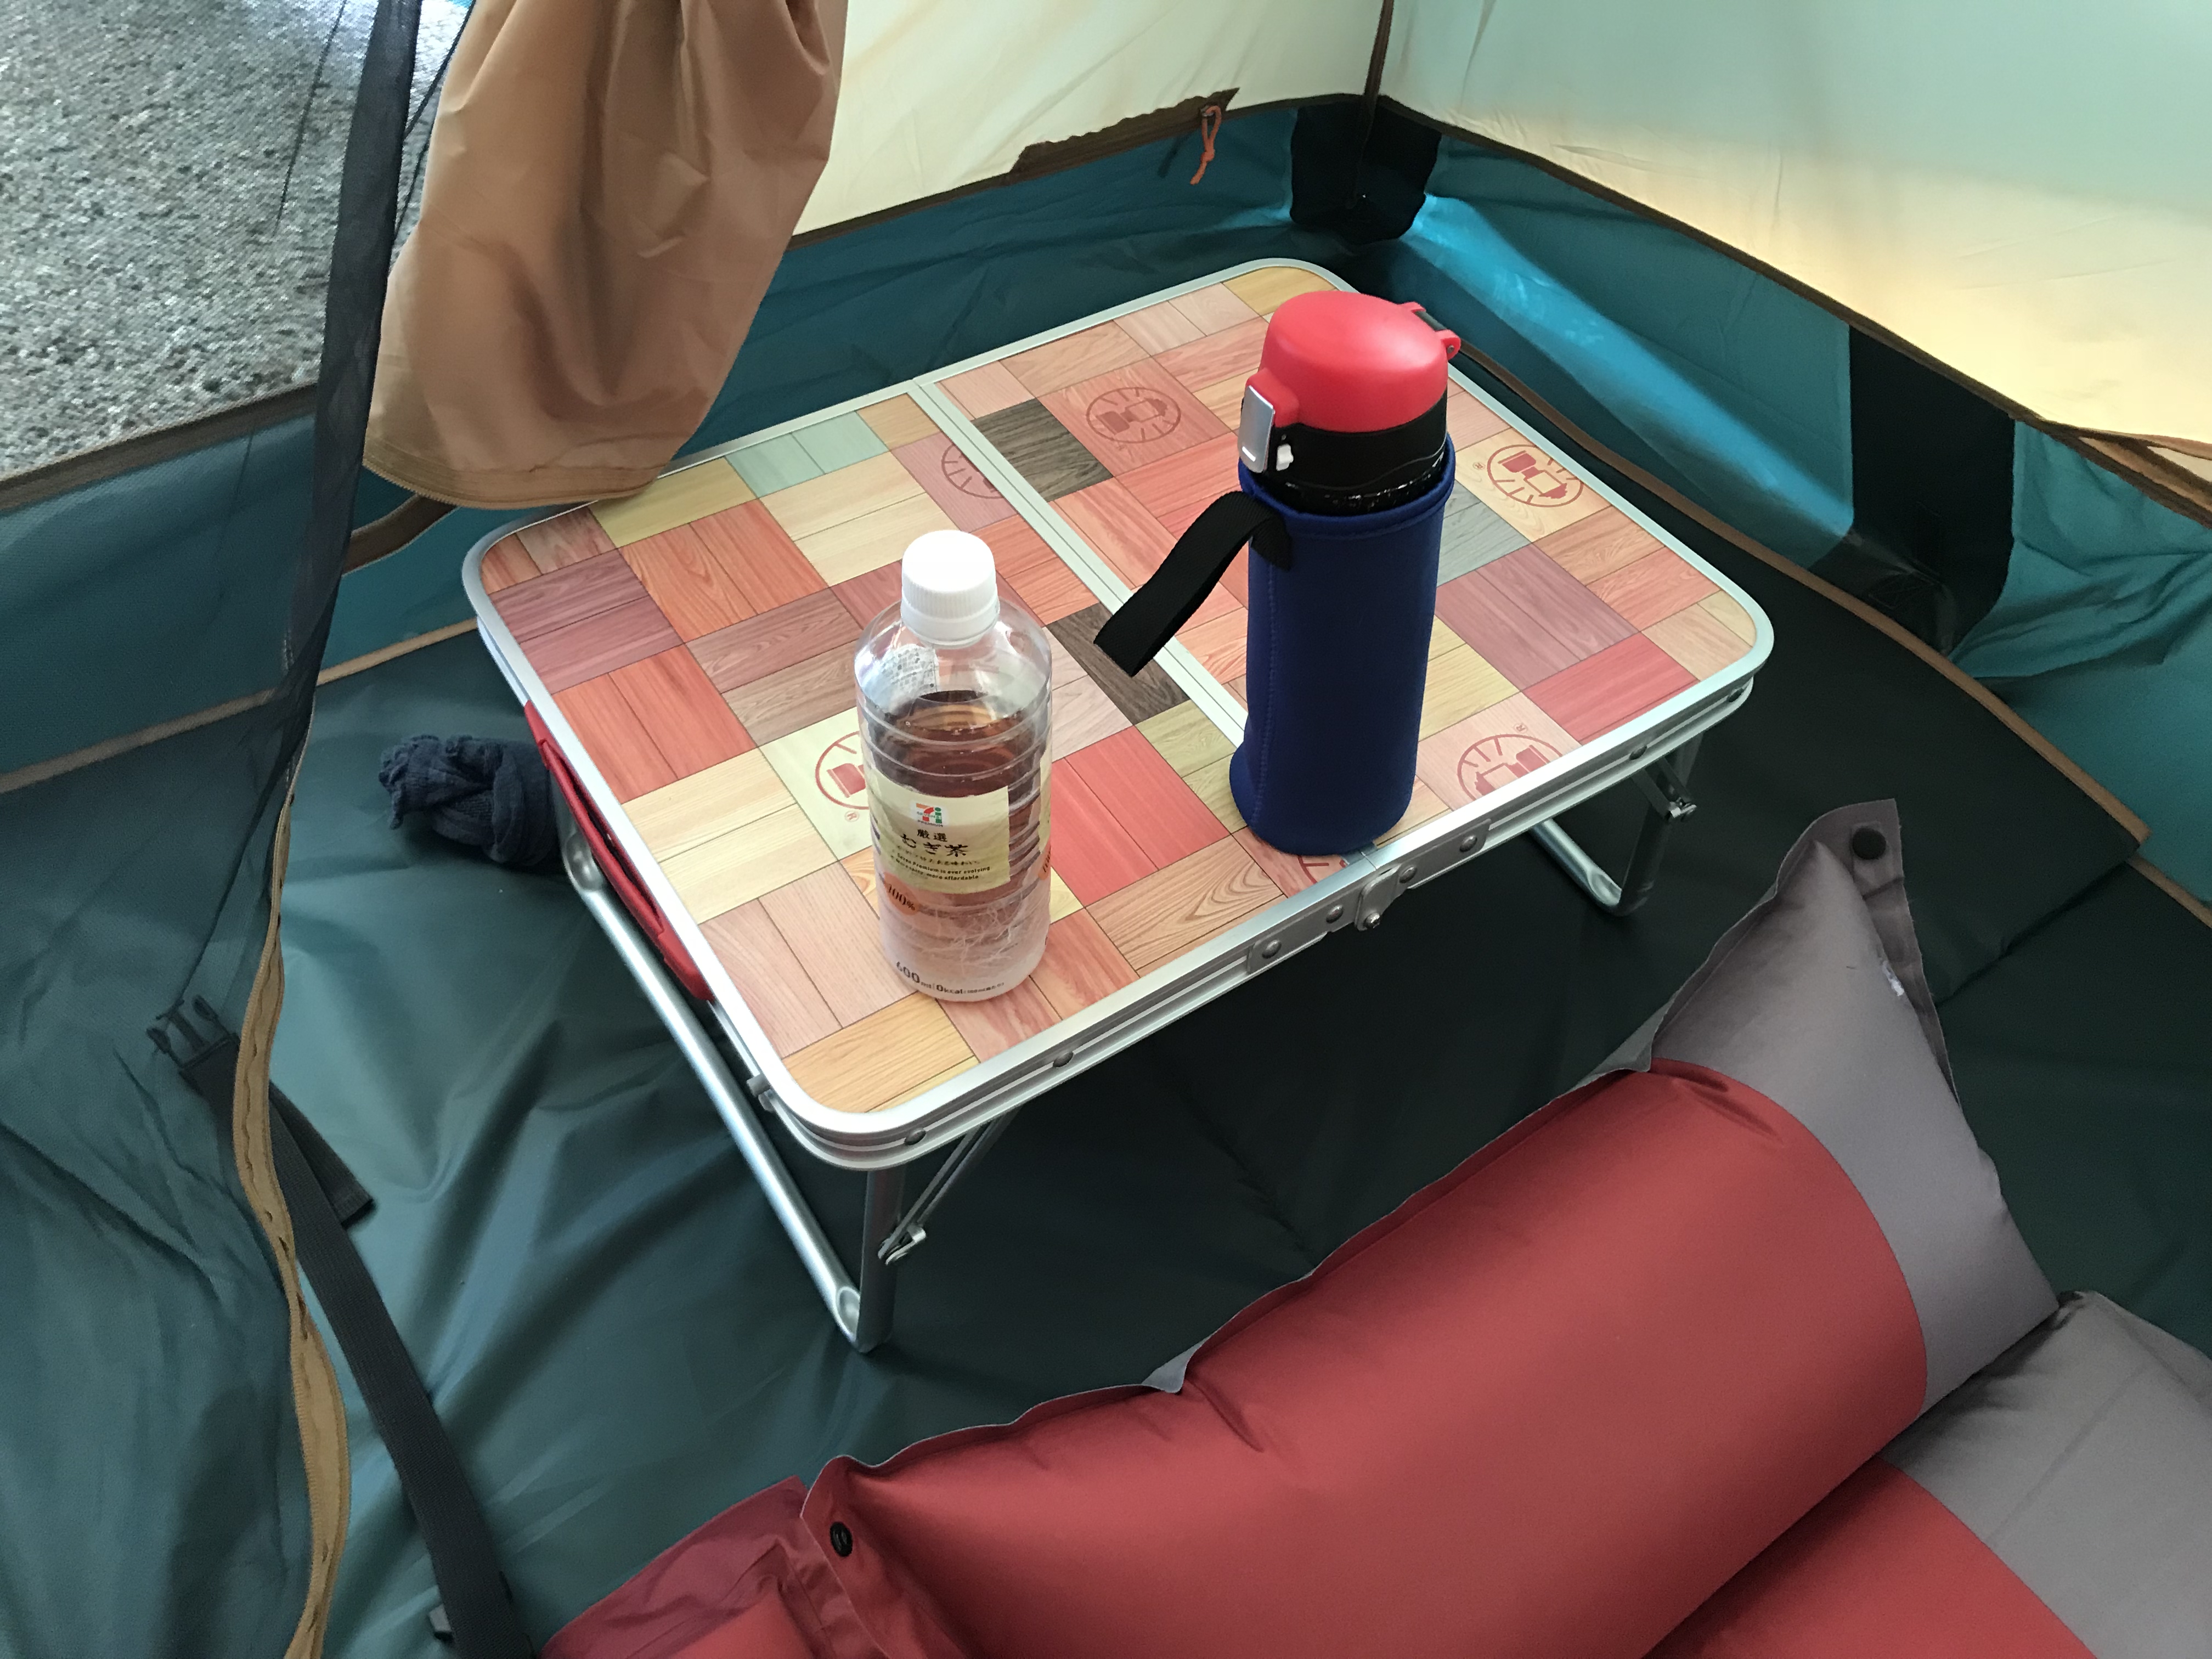 ミニテーブルをキャンプに持っていったら思った以上に便利だった件【アウトドア】 : ゴマダレ